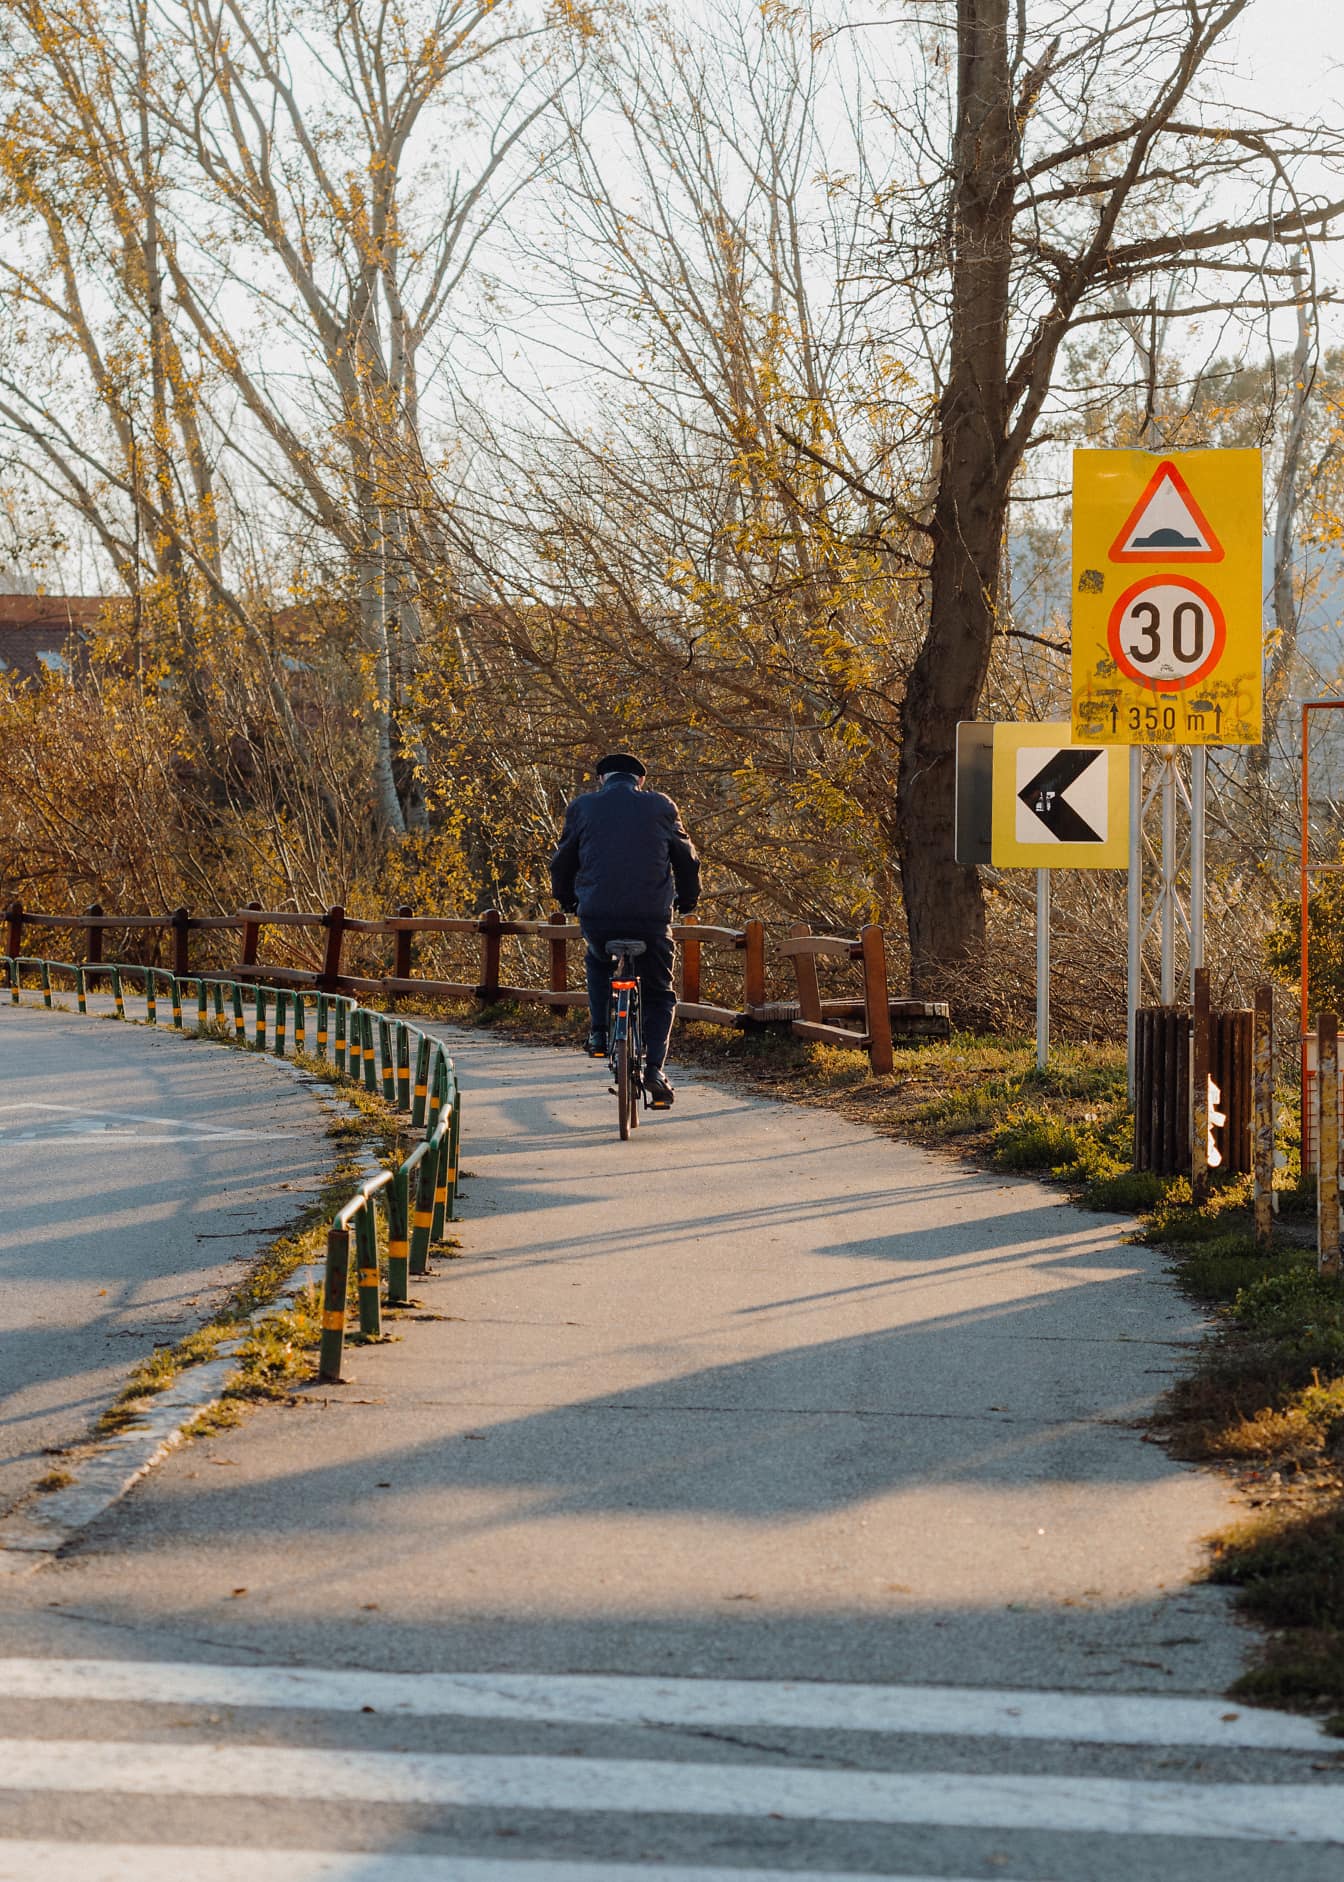 Старик едет на велосипеде по асфальтированной дорожке с дорожным знаком на дороге 30 км/ч